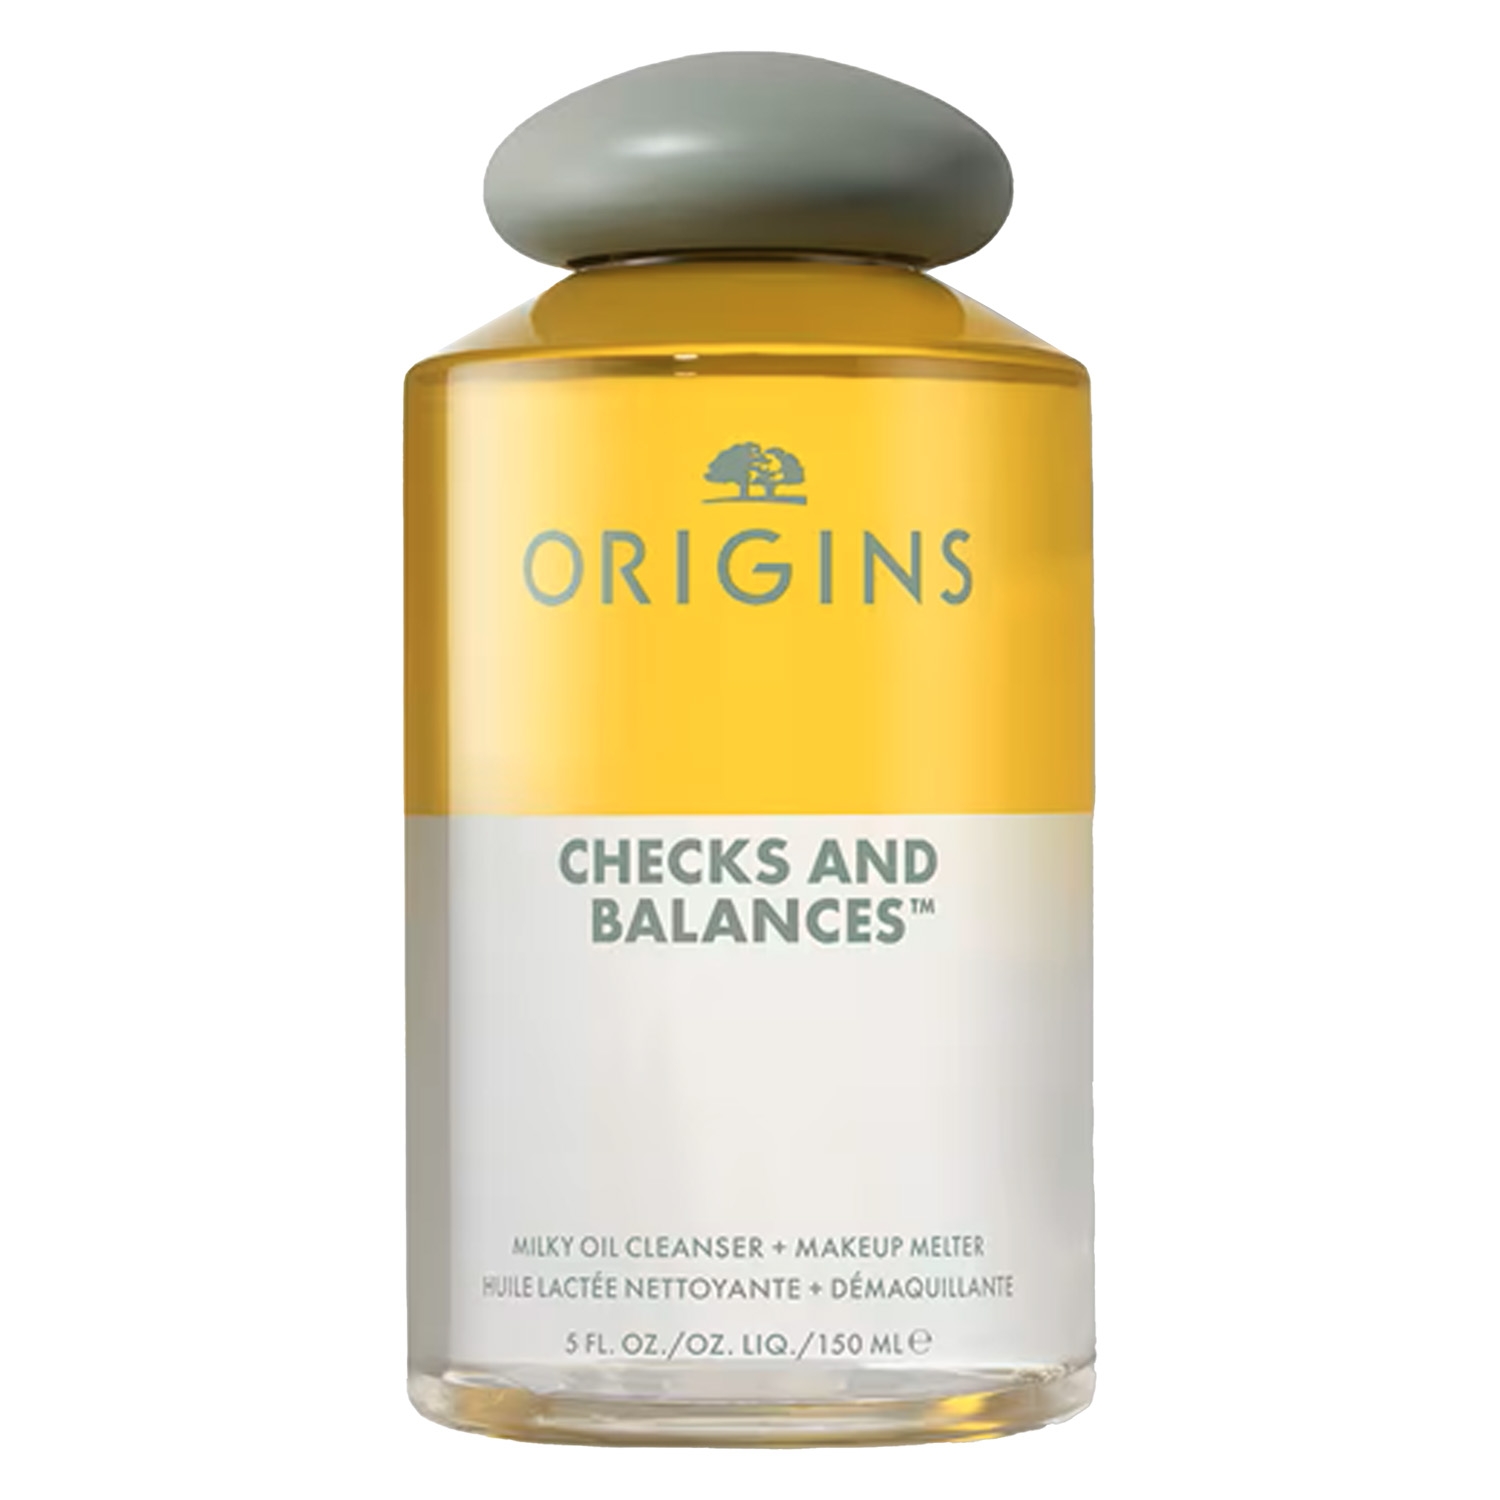 Produktbild von Origins Checks and Balances - Milk Oil Cleanser